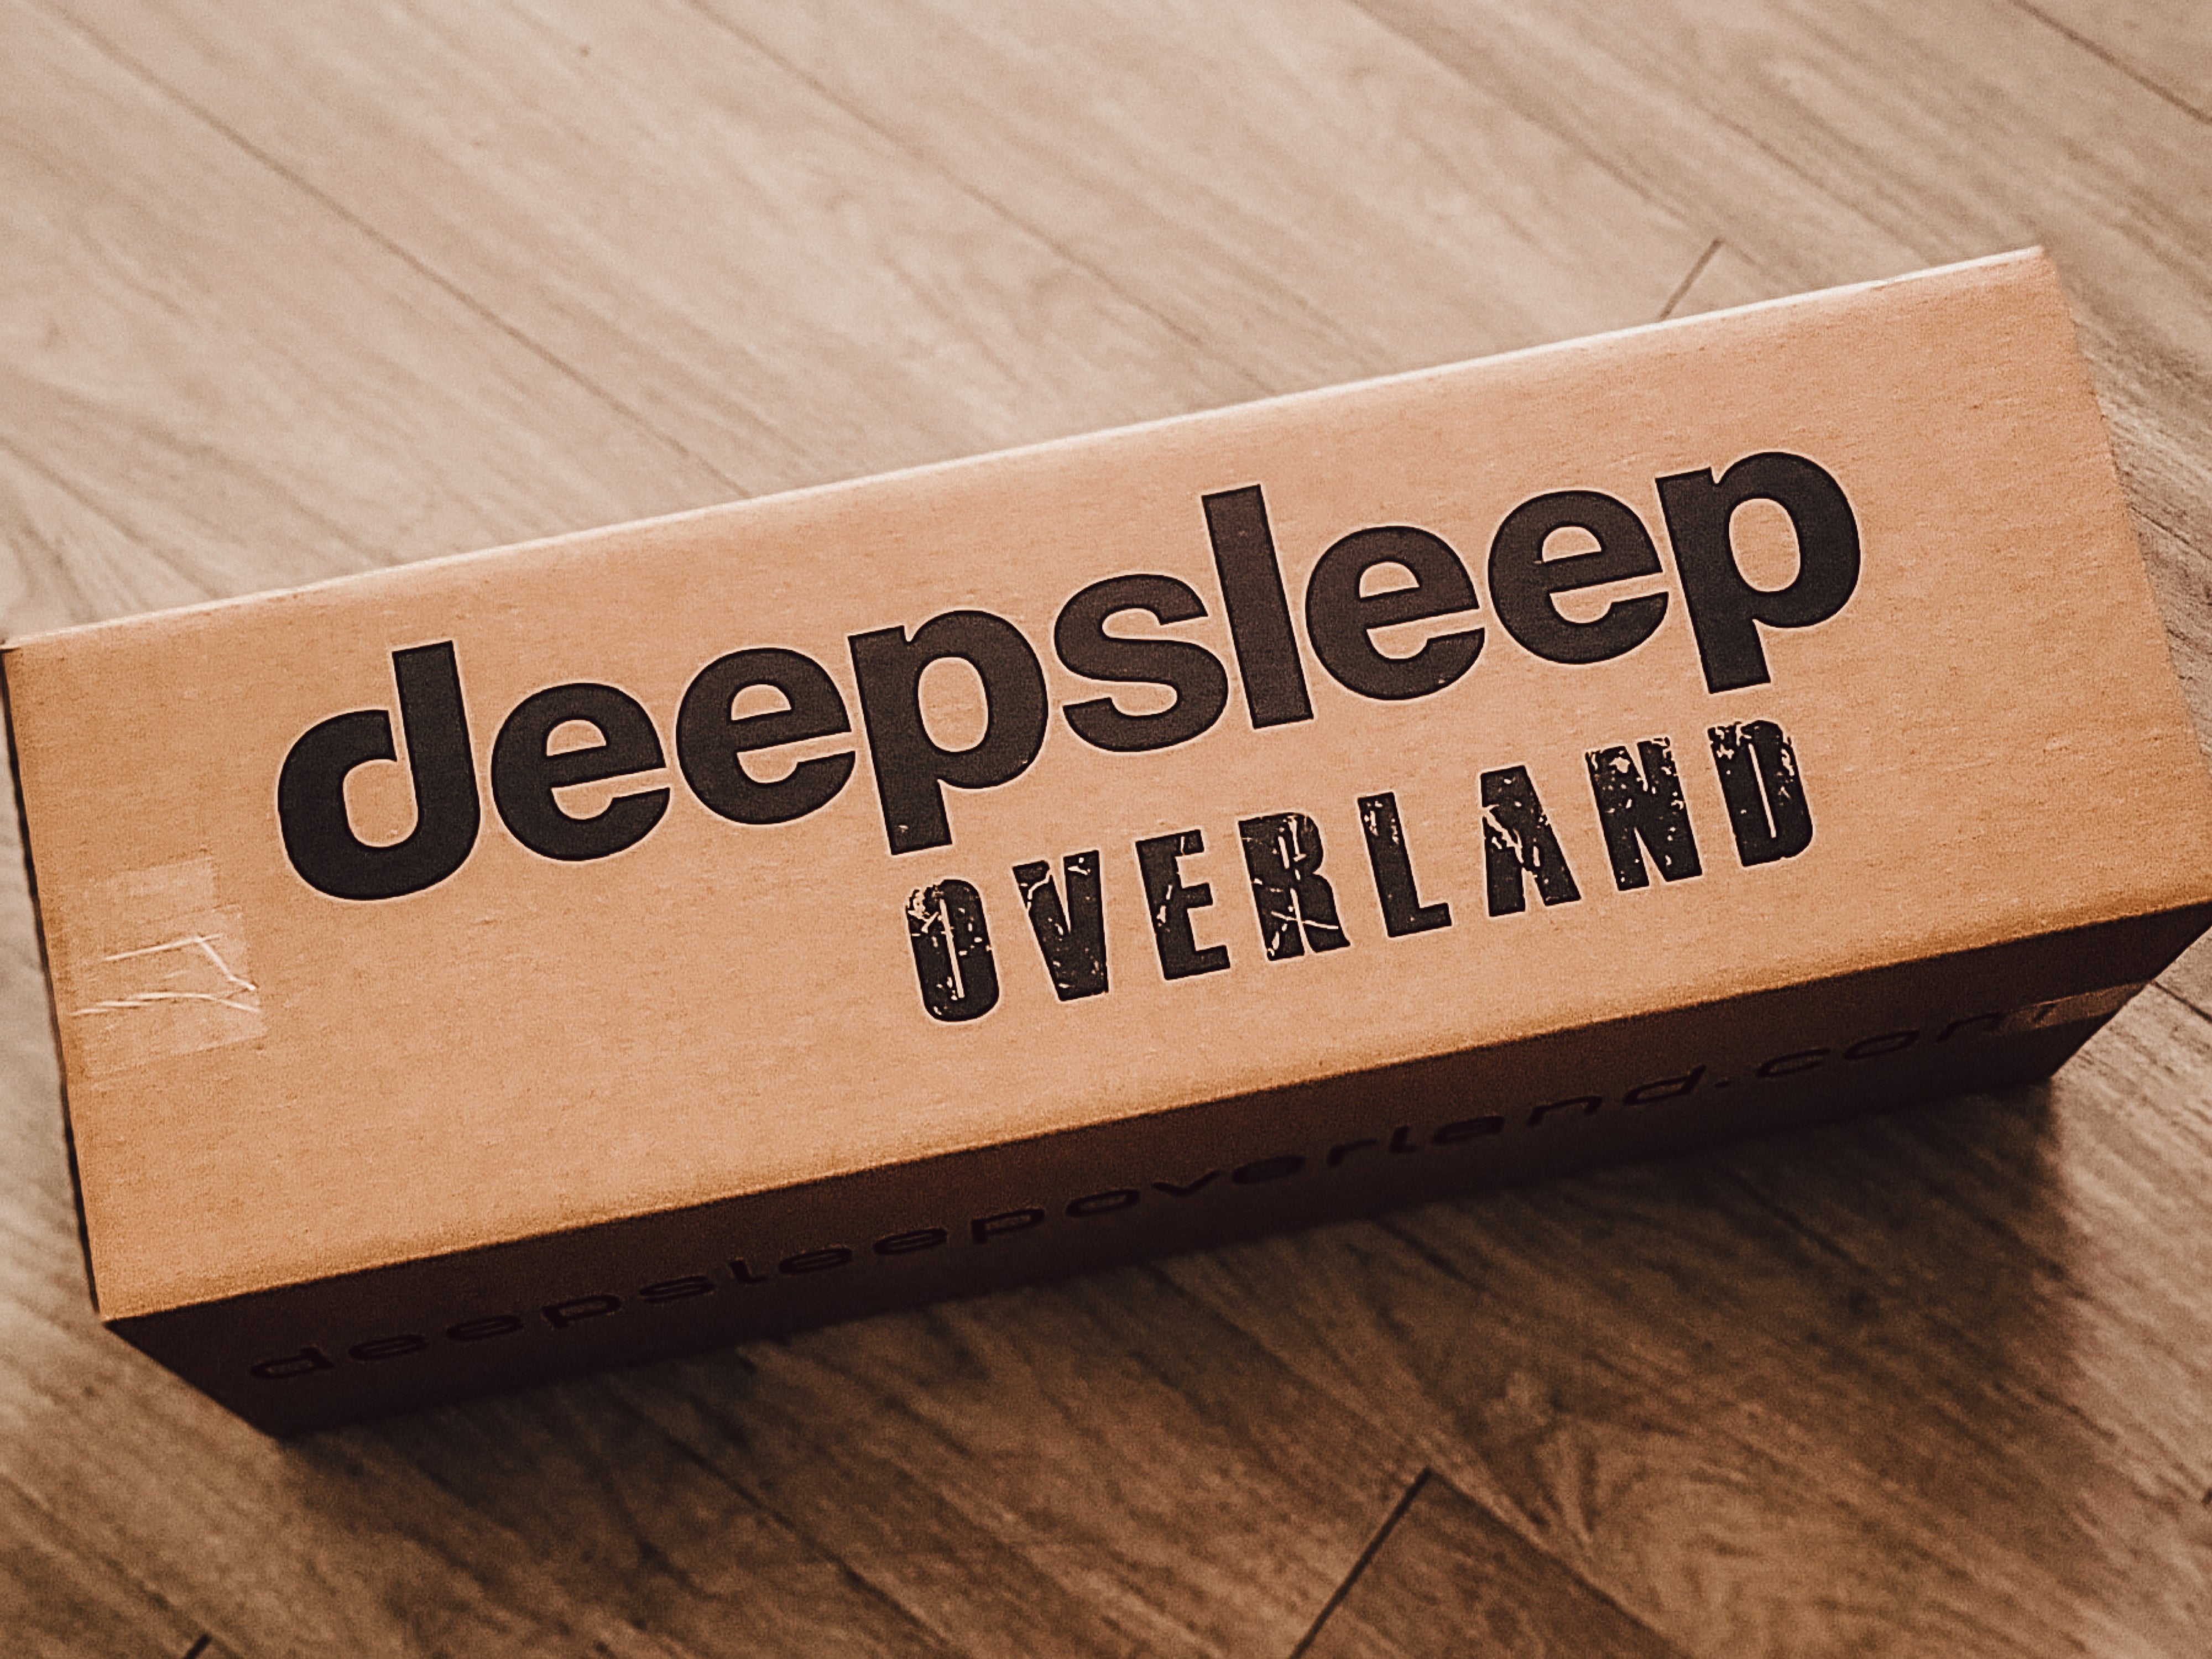 deepsleep overland